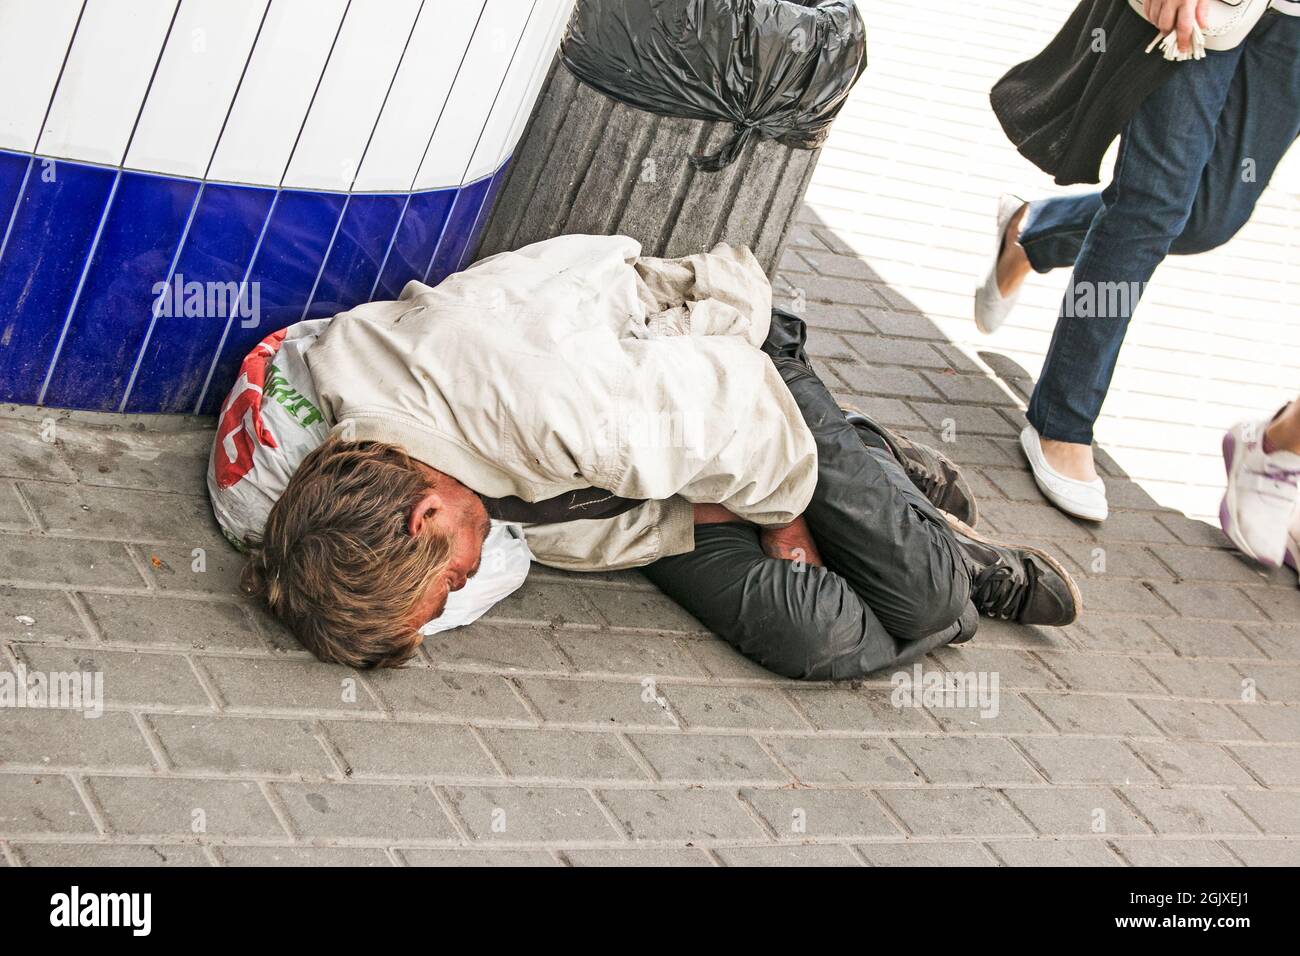 Dnepropetrovsk, UKRAINE - 09.05.2021: Un mendiant sans-abri dort dans la rue. Les sans-abri, les gens sales dorment dans les rues pavées. Problème social. Begga Banque D'Images